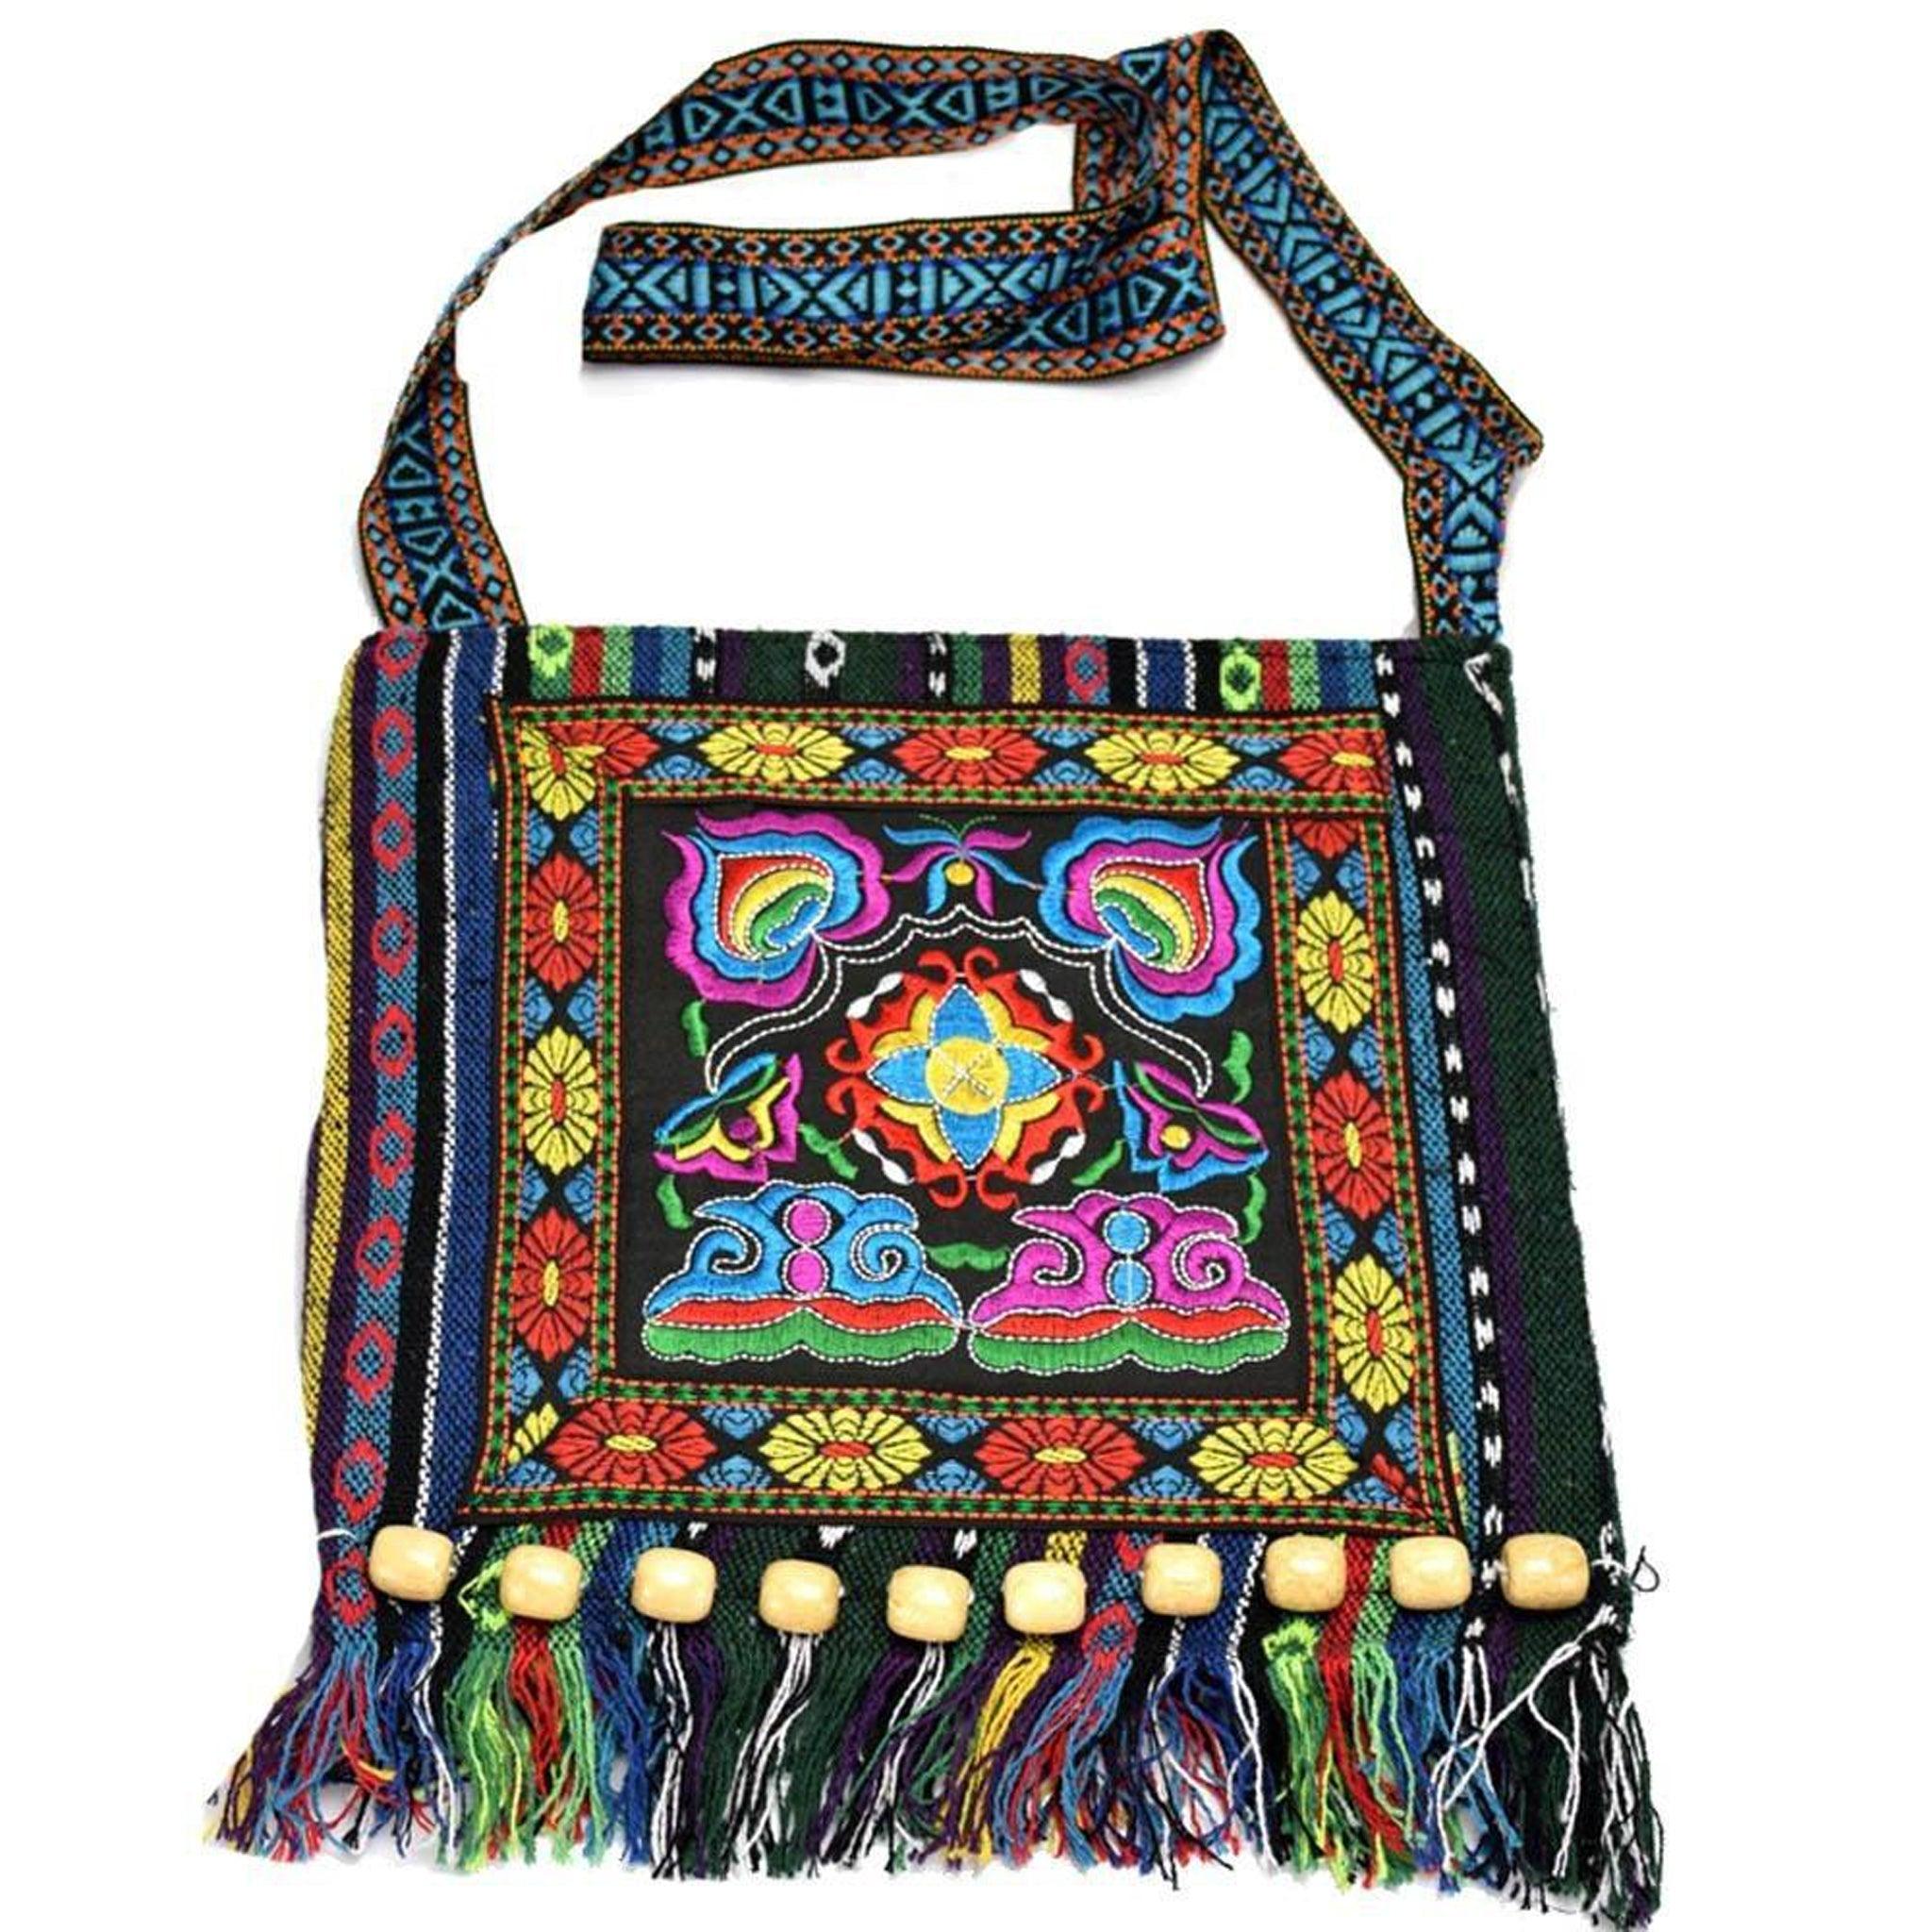 Vintage Style Ethnic Shoulder Bag - Kevous